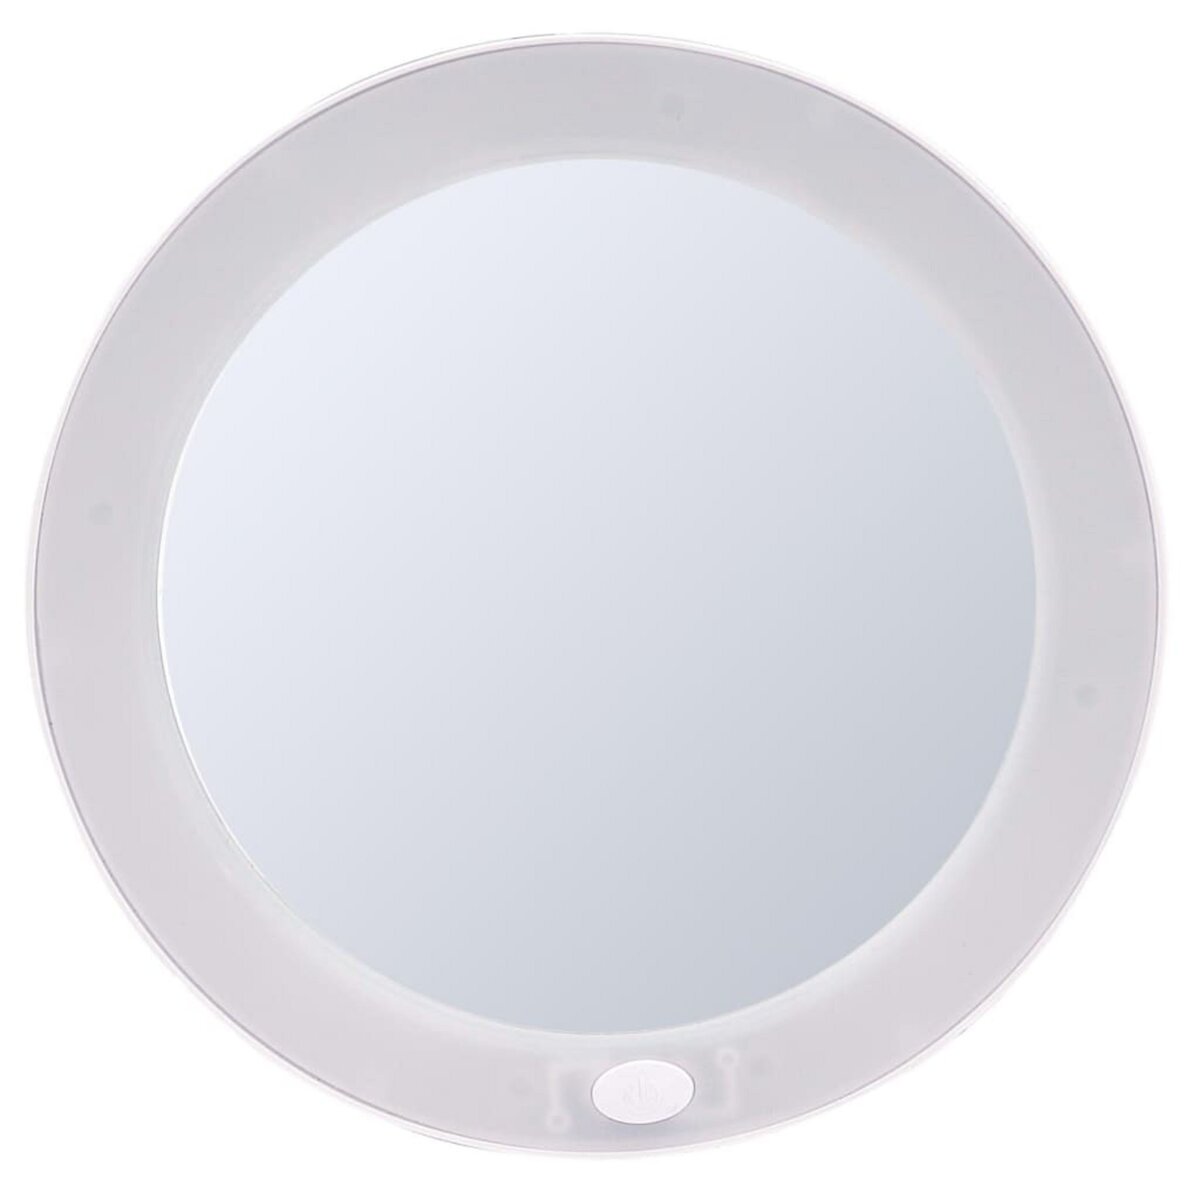 RIDDER RIDDER Miroir de maquillage Mulan S 12,7 cm Blanc